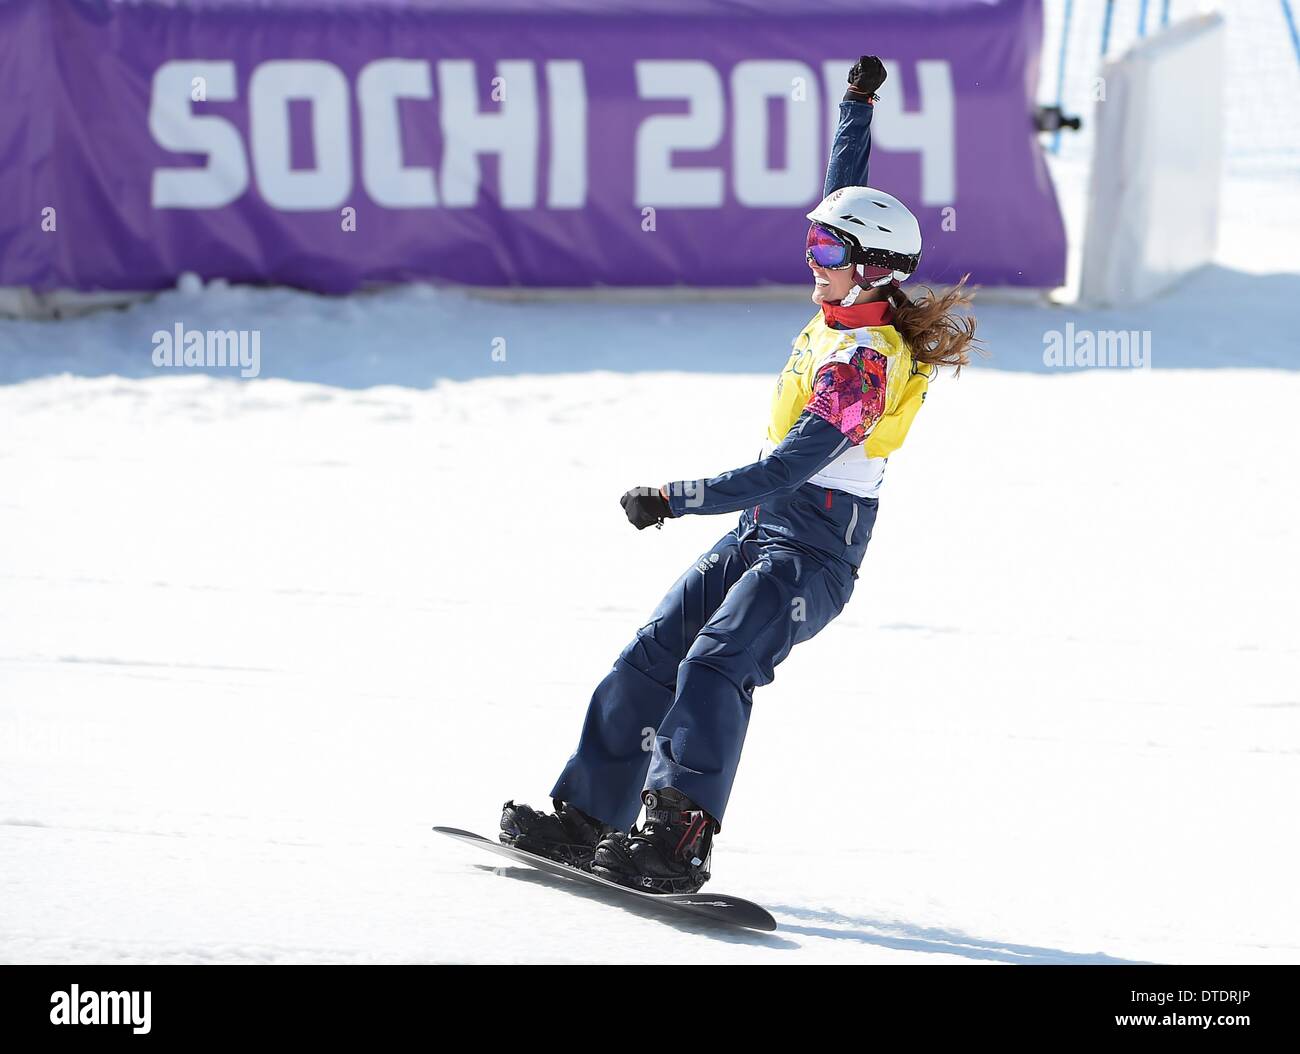 Zoe Gillings (GBR) feiert nach der Qualifikation für das Halbfinale. Womens Snowbboard Cross - Rosa Khutor Extreme Park - Sotschi - Russland - 16.02.2014 Stockfoto